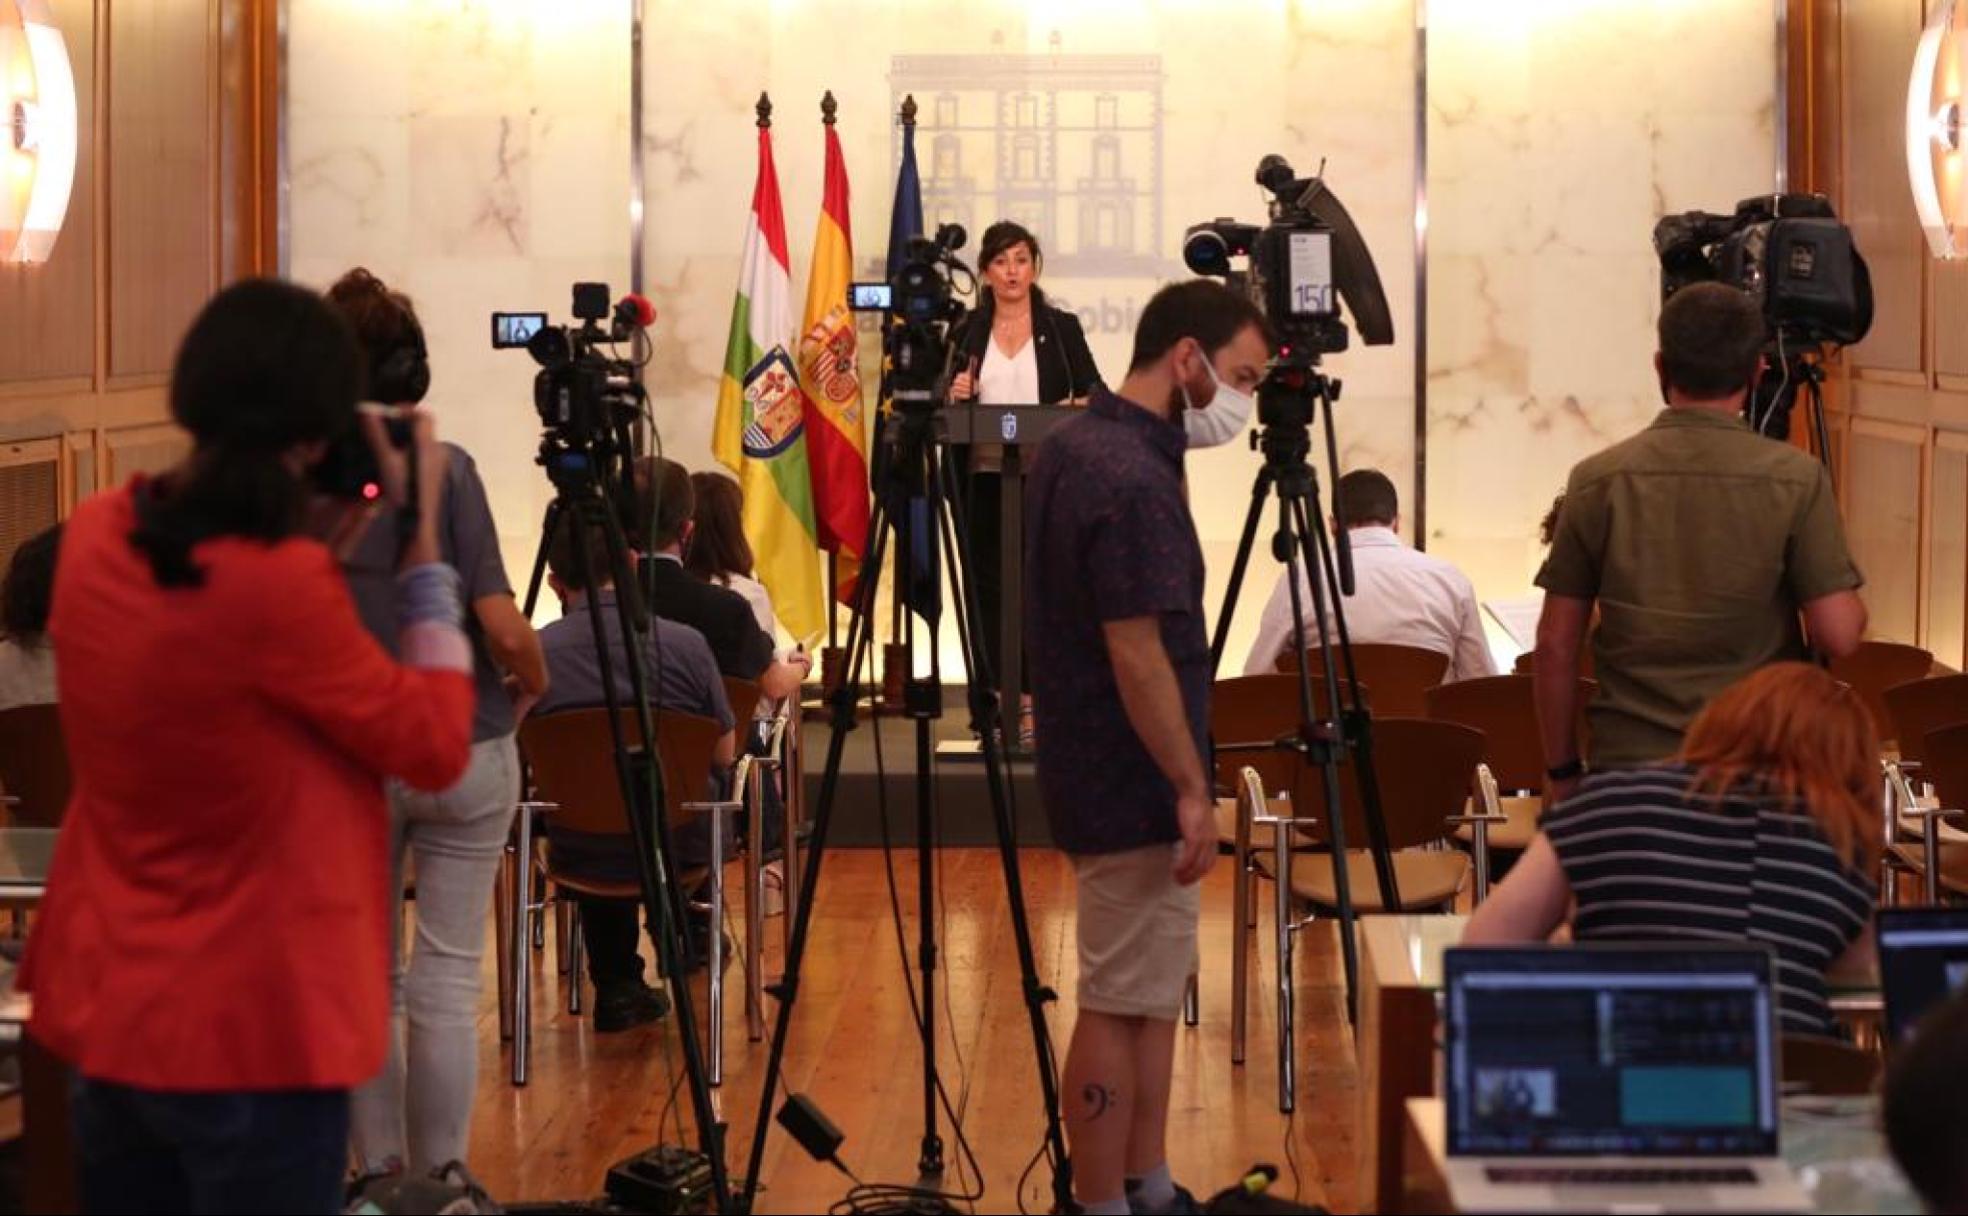 Normas y restricciones por el coronavirus en La Rioja: reuniones de no más de 6 personas y se recomienda limitar la movilidad fuera del municipio